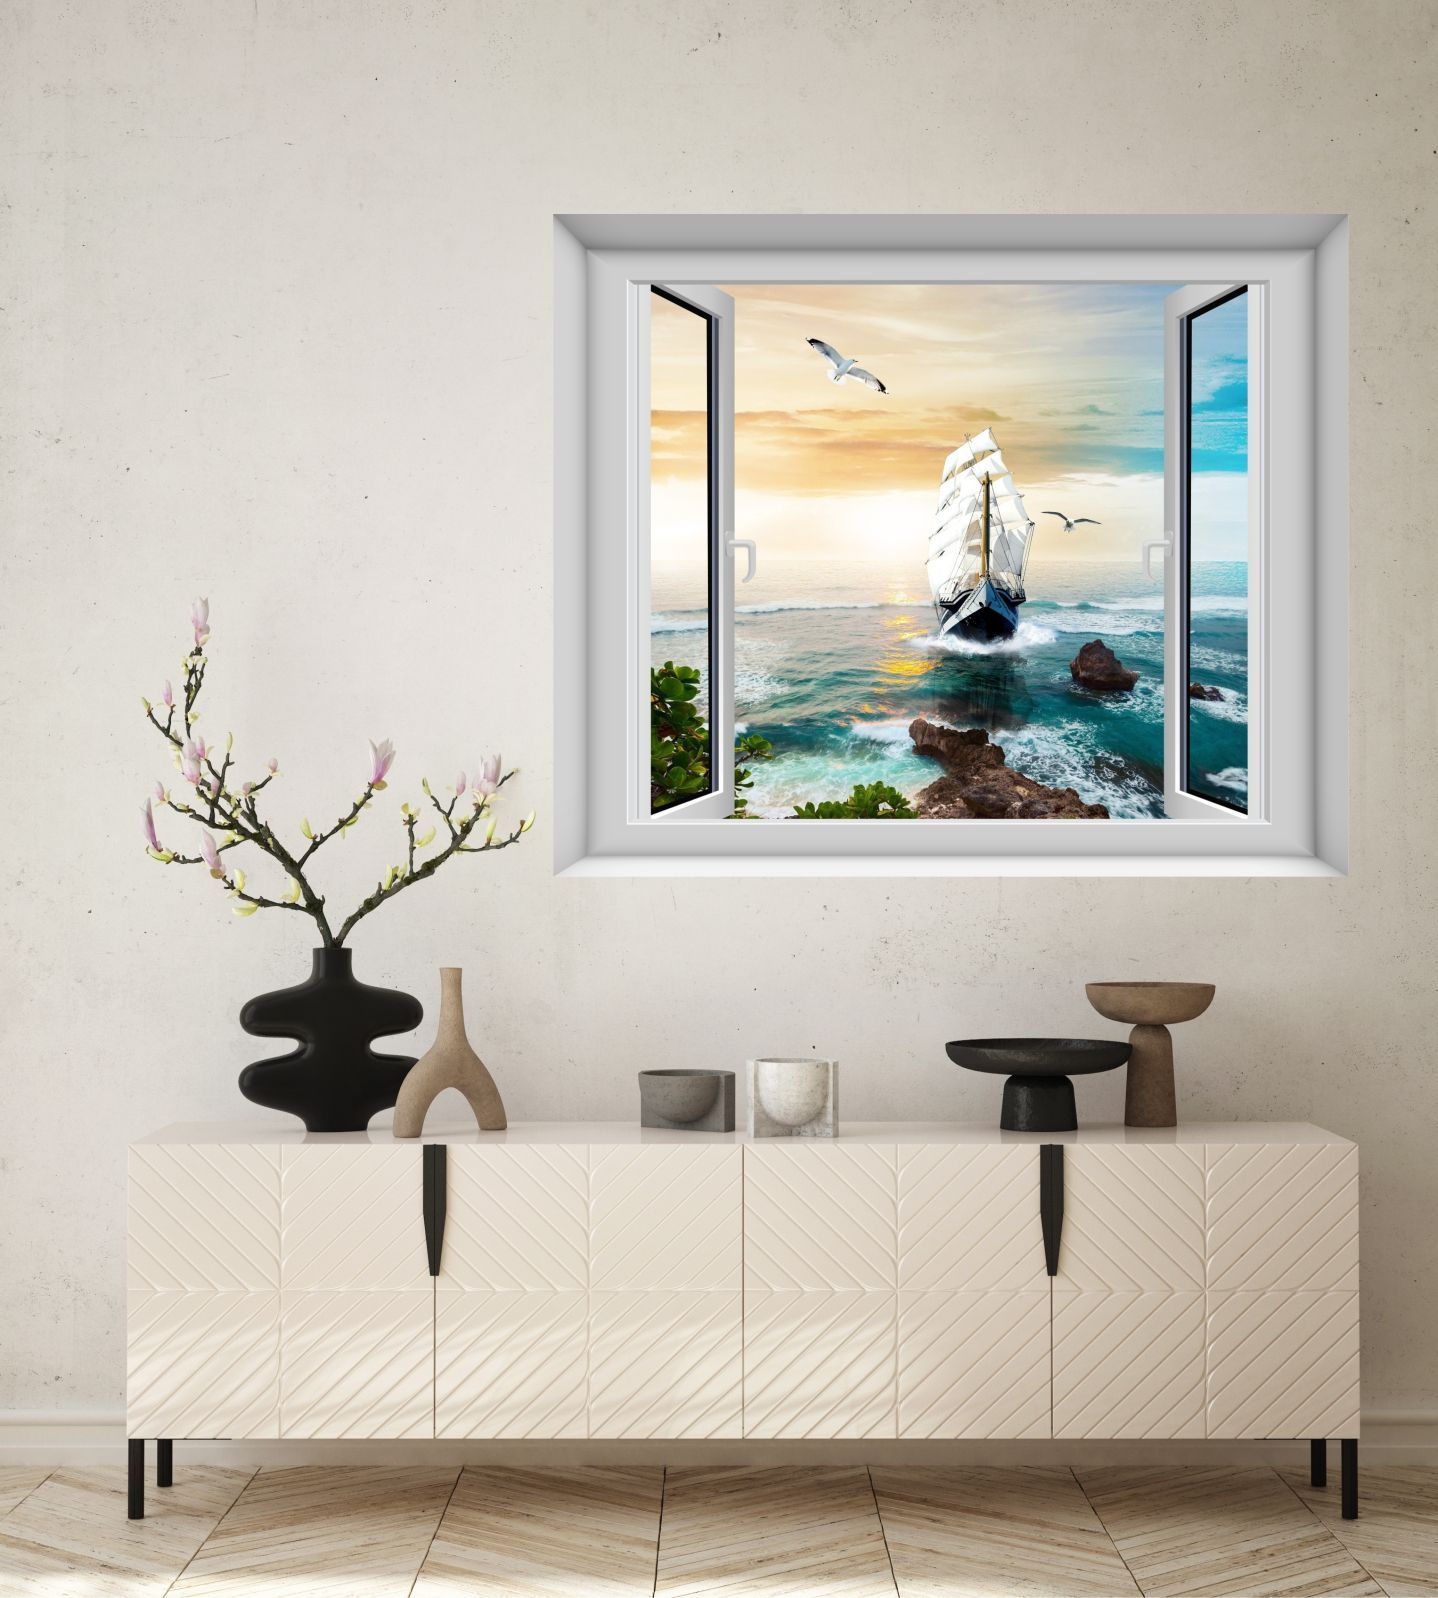 Фотообои Dekor Vinil постер Вид из окна на парусник в море бесшовные 100х120 см